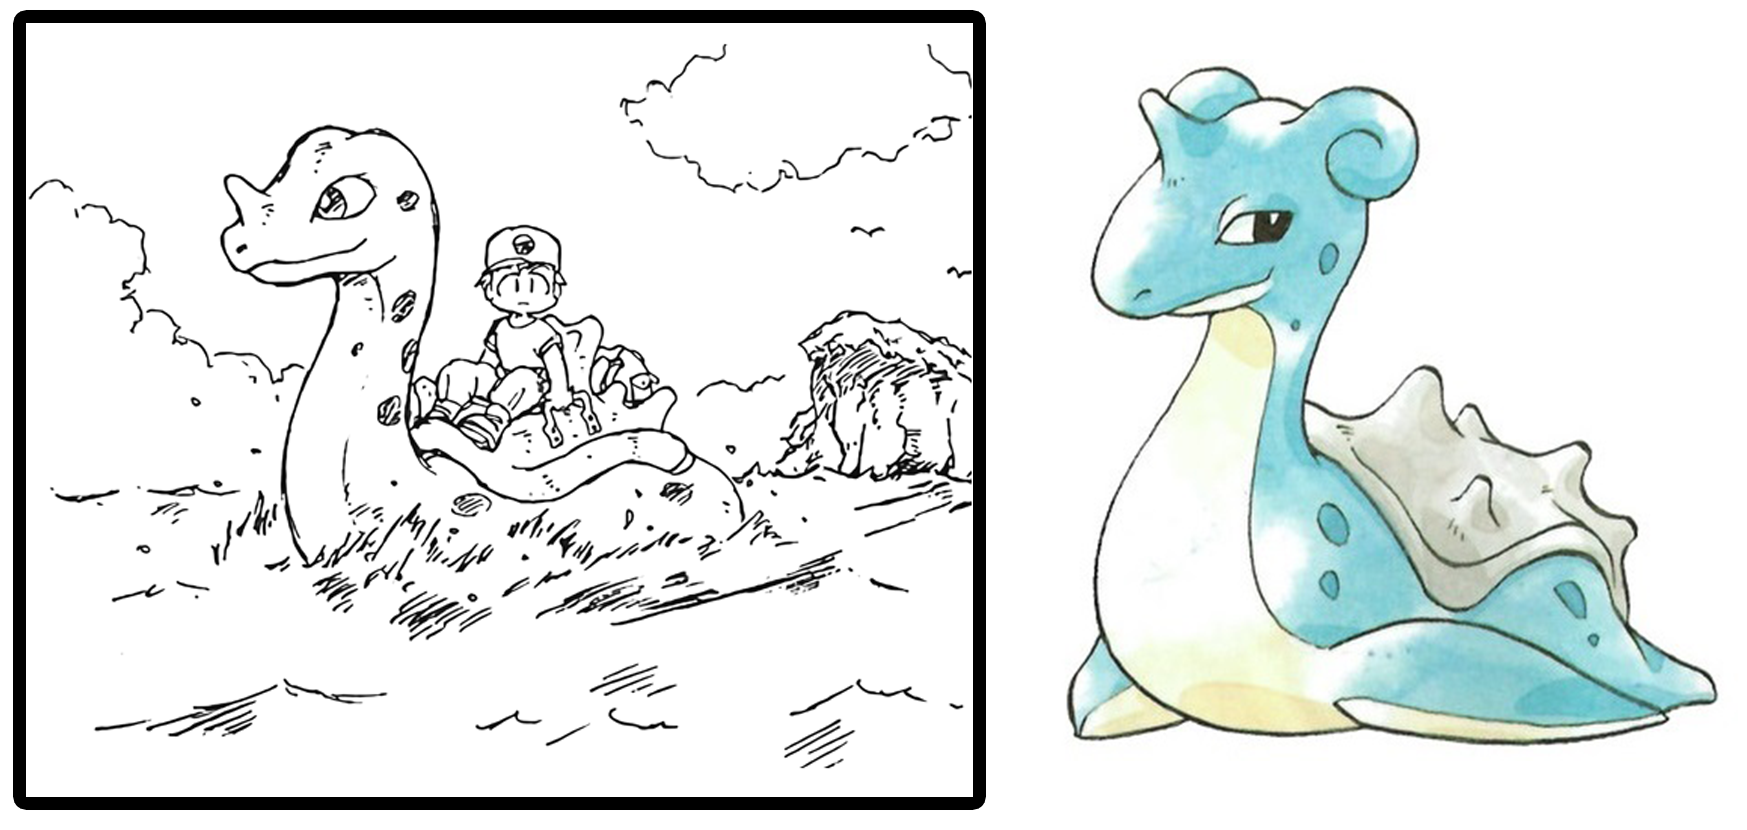 Pokémon Fanatics - Kicking off this week with some throwback artwork of the Kanto  Pokédex!